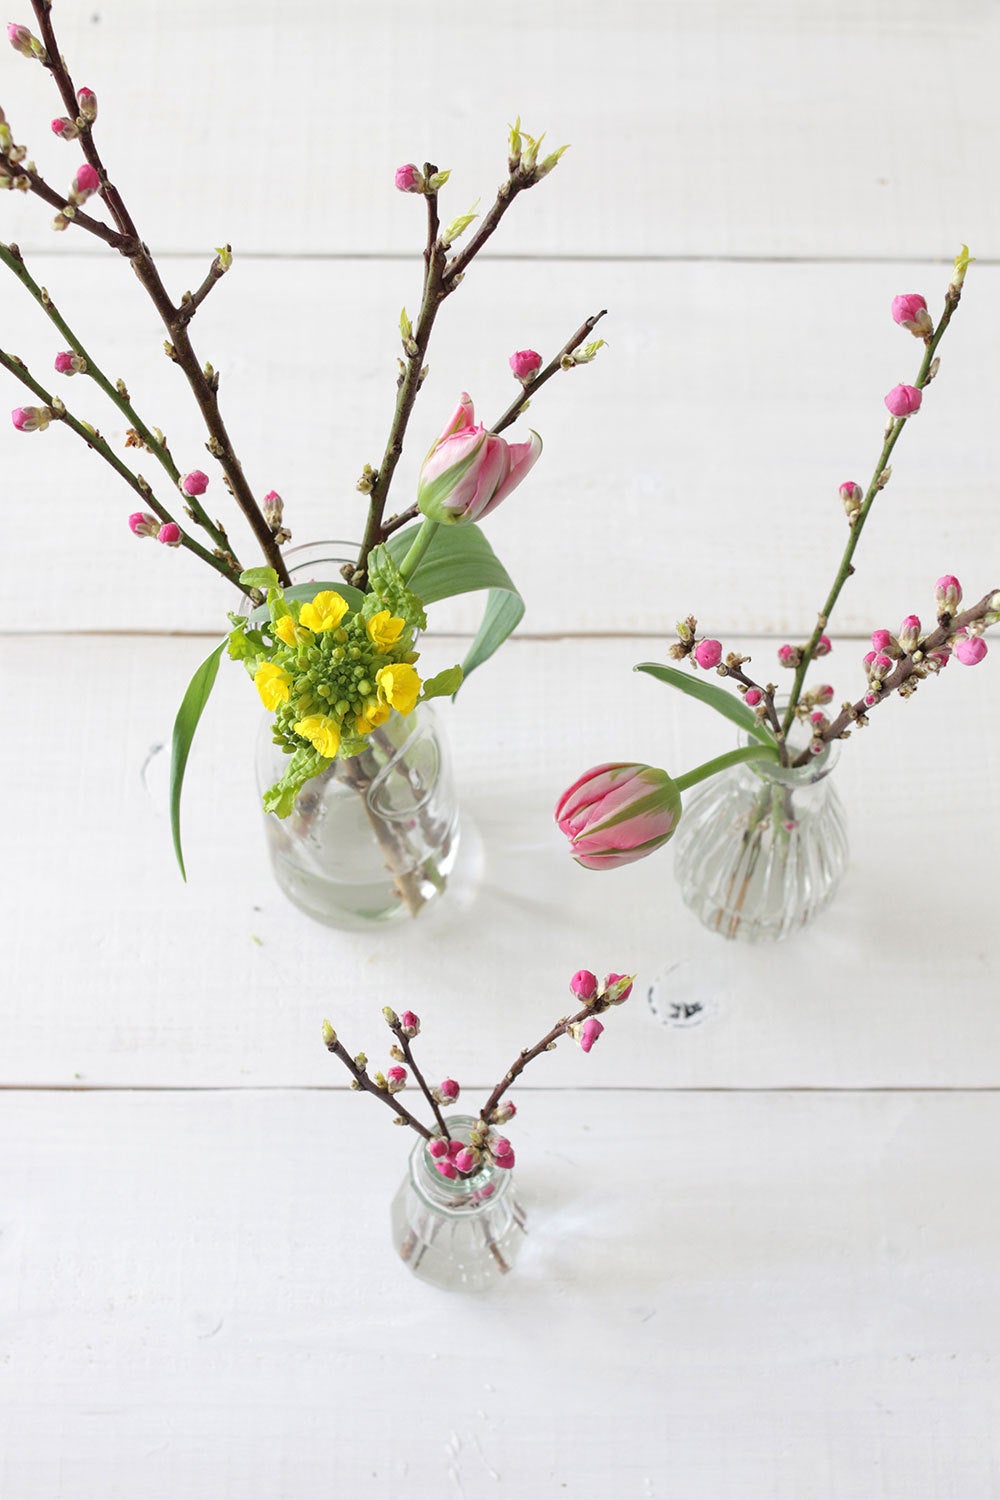 ひな祭りのお花 桃の花の枝は短くカット が扱いやすい 暮らしの小さなアイデア帳 ラクして楽しむ暮らしのアイデア